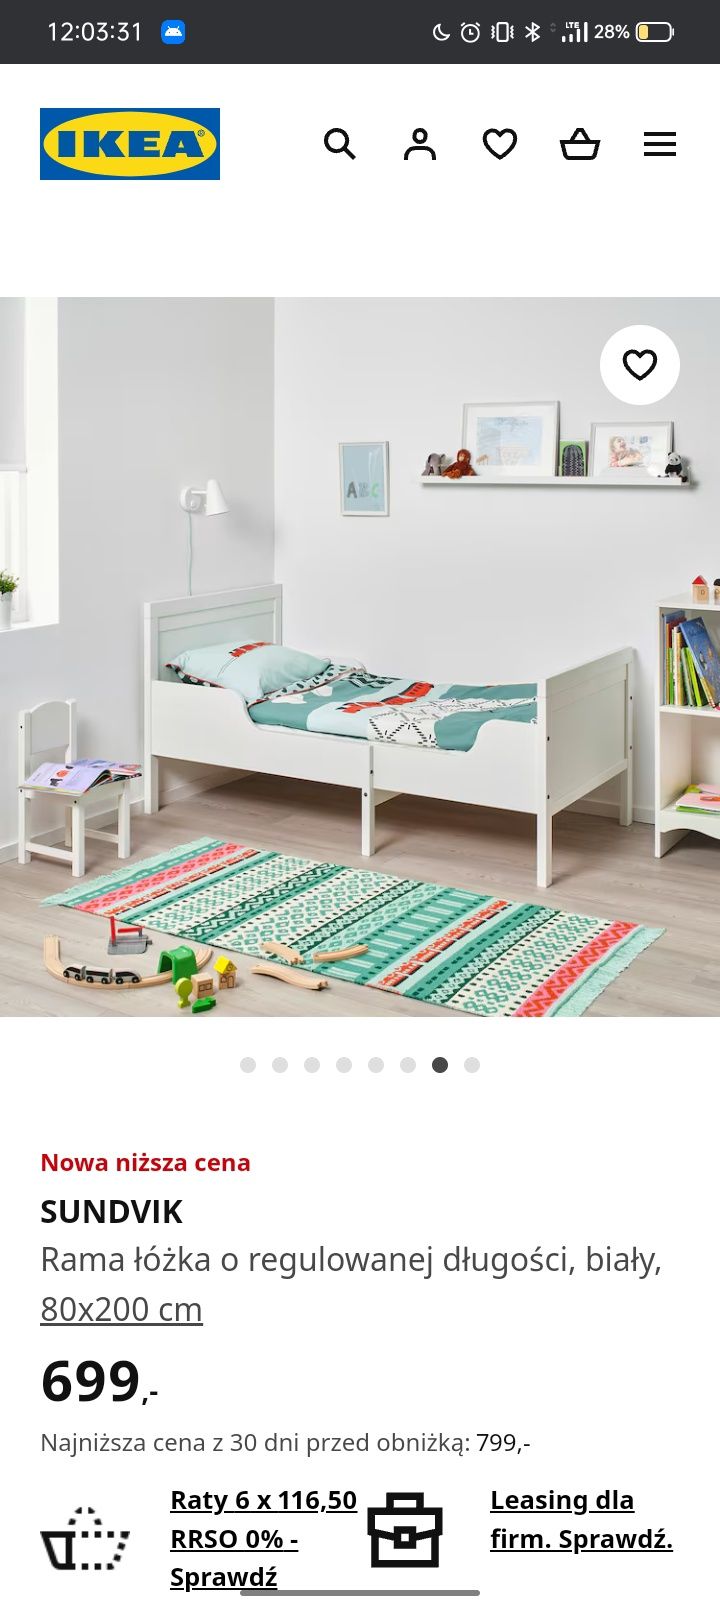 Rama łóżka o regulowanej długości IKEA SUNDVIK